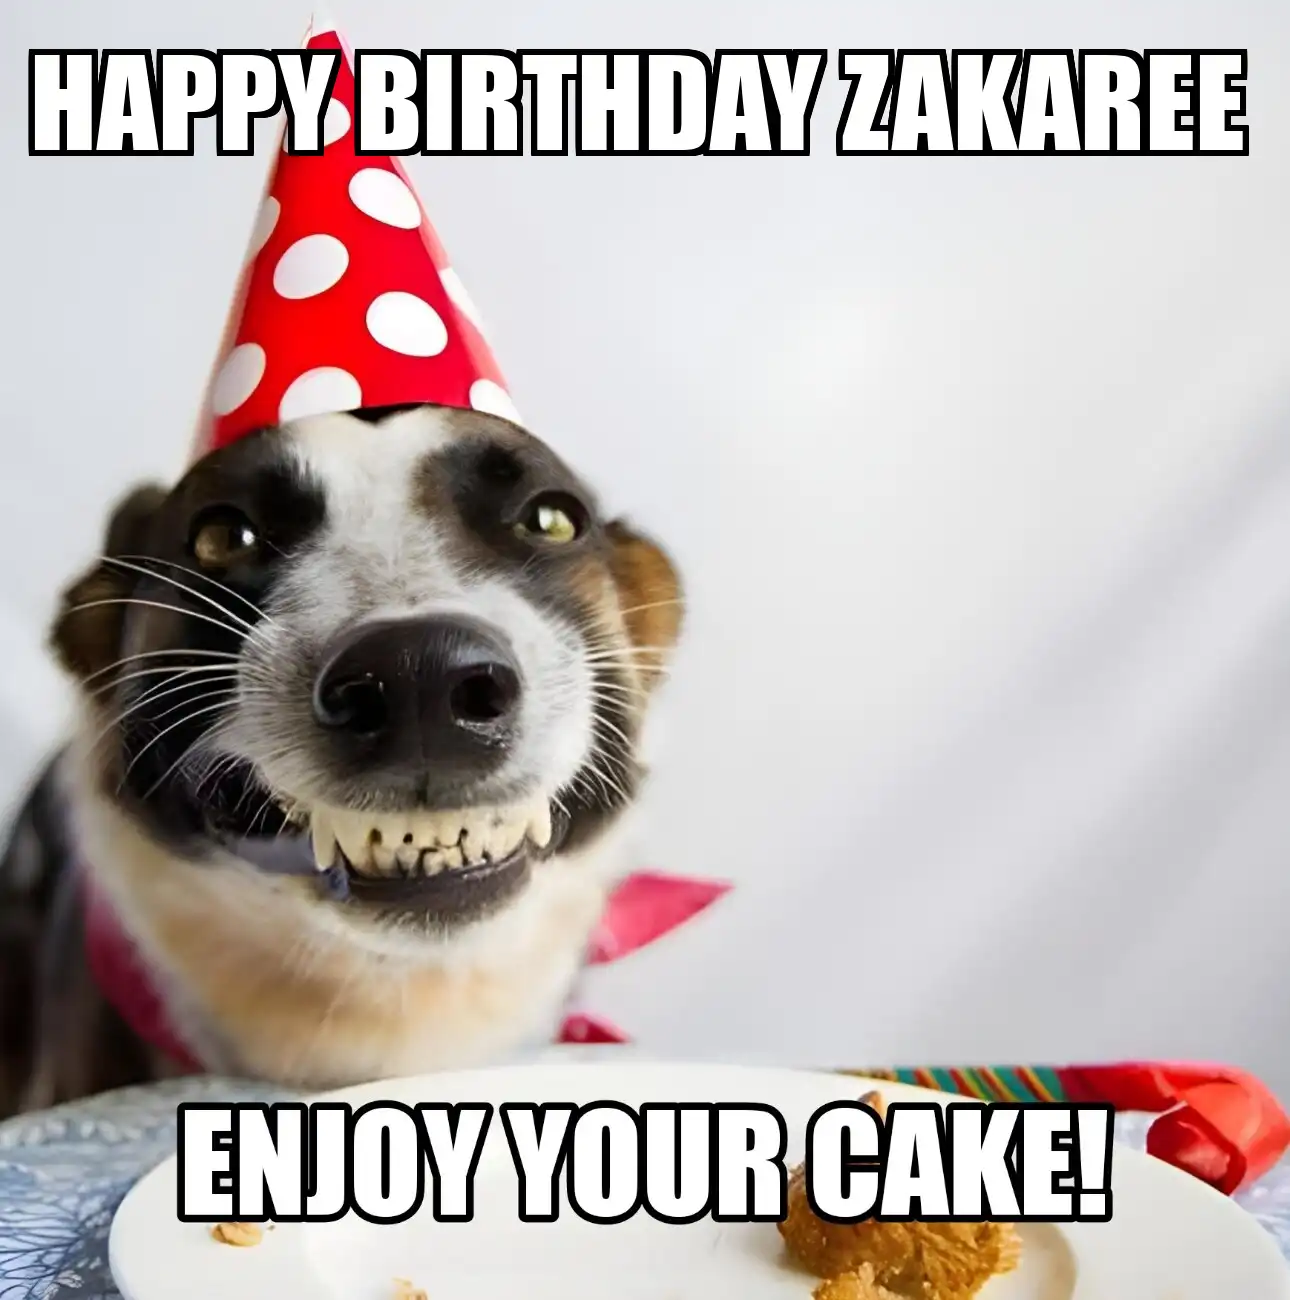 Happy Birthday Zakaree Enjoy Your Cake Dog Meme